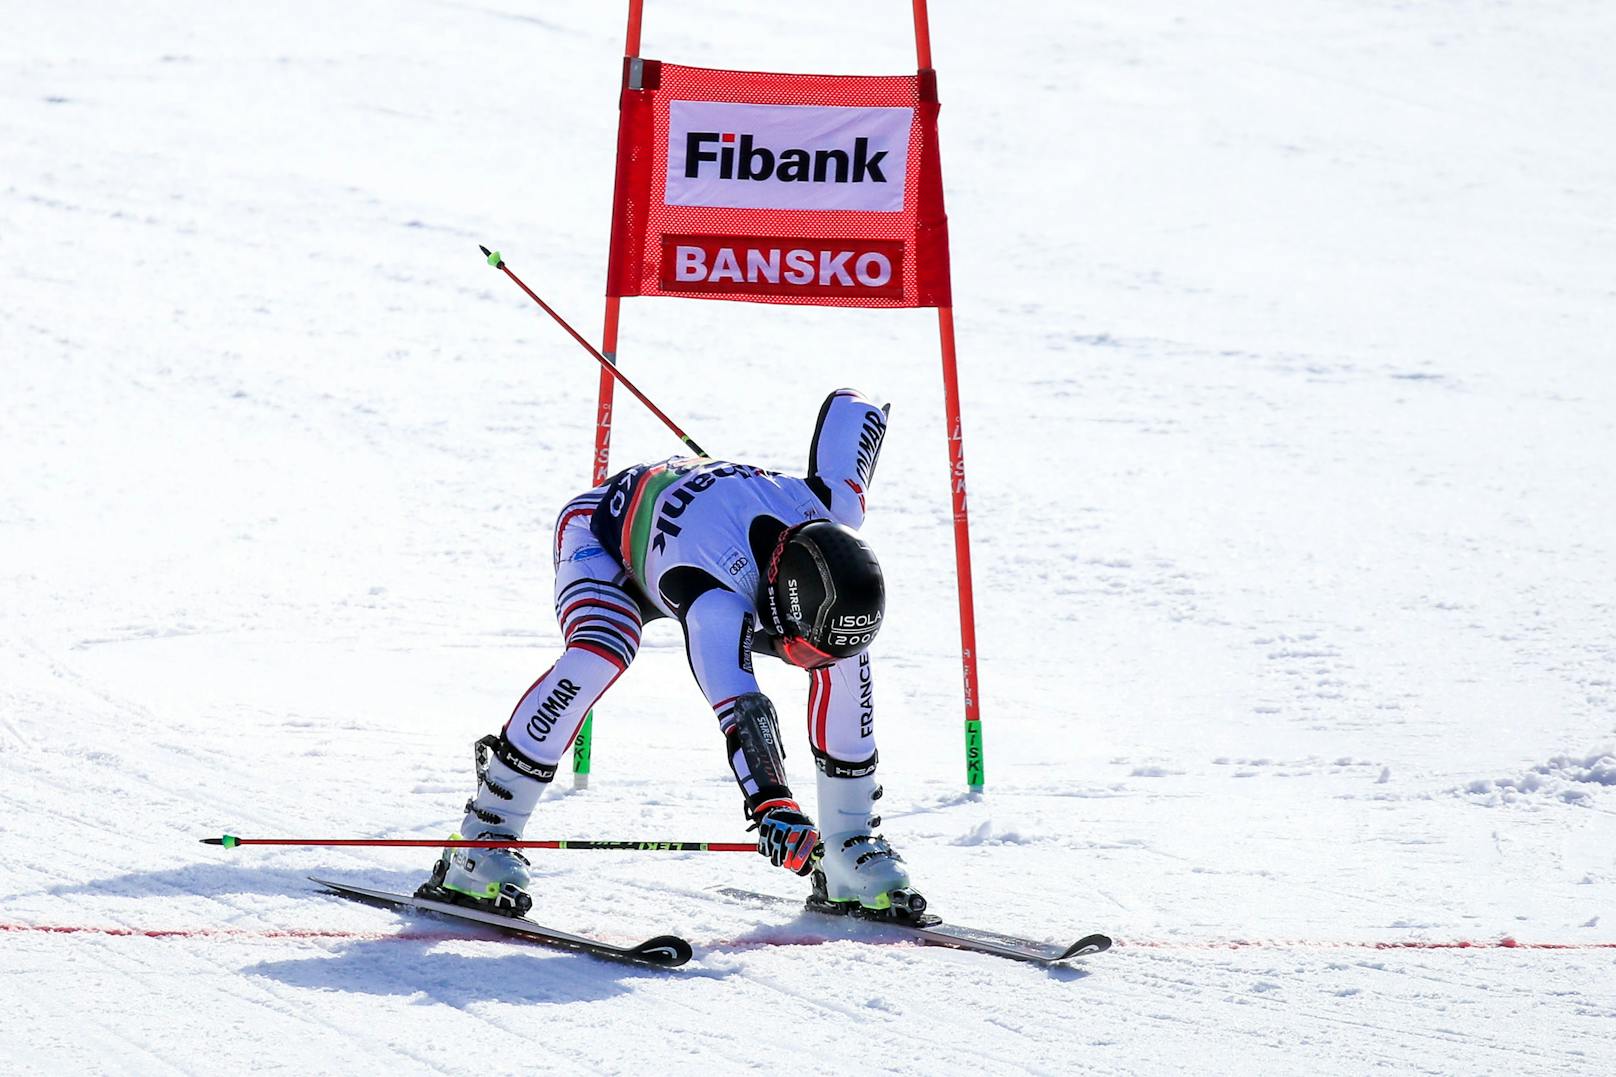 Im zweiten Bewerb holte Faivre (Fr) die 100 Punkte. Österreichs Ski-Asse ließen aus. Brennsteiner kam als bester ÖSV-Athlet auf Rang fünf.